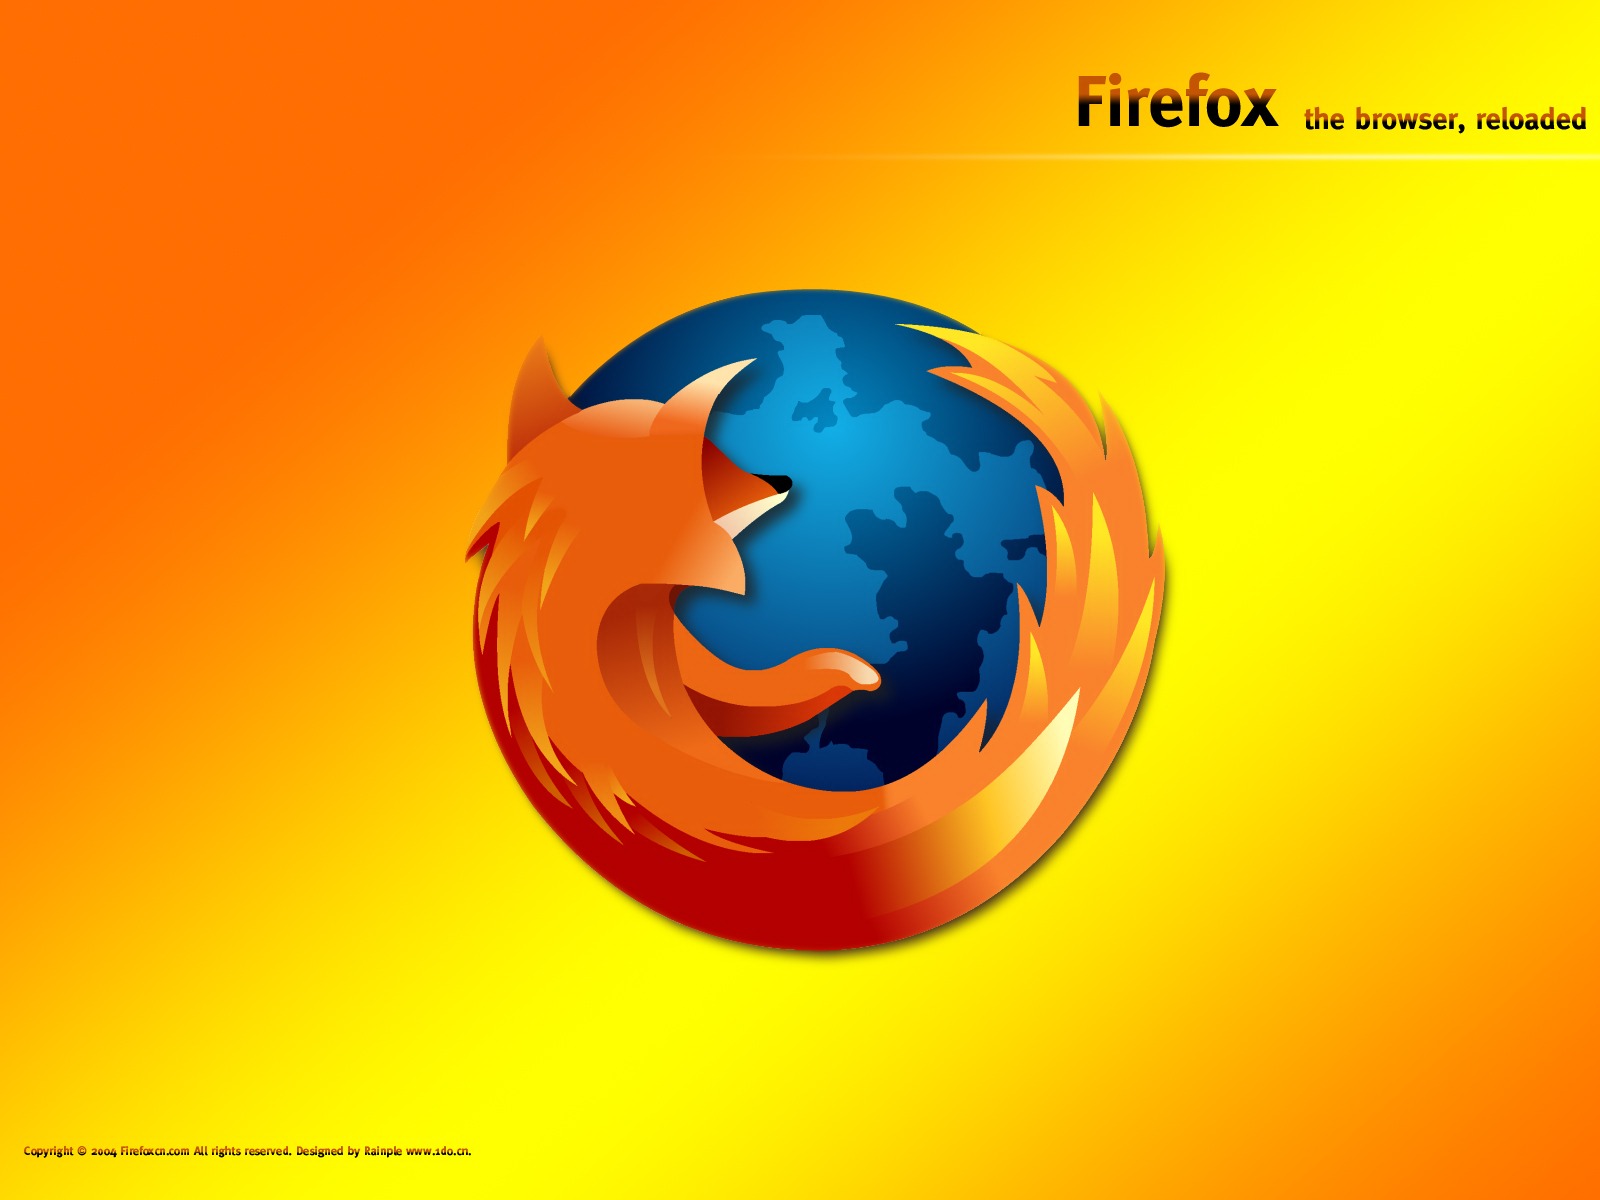 壁纸1600x1200Firefox 2 16壁纸 Firefox壁纸 Firefox图片 Firefox素材 品牌壁纸 品牌图库 品牌图片素材桌面壁纸